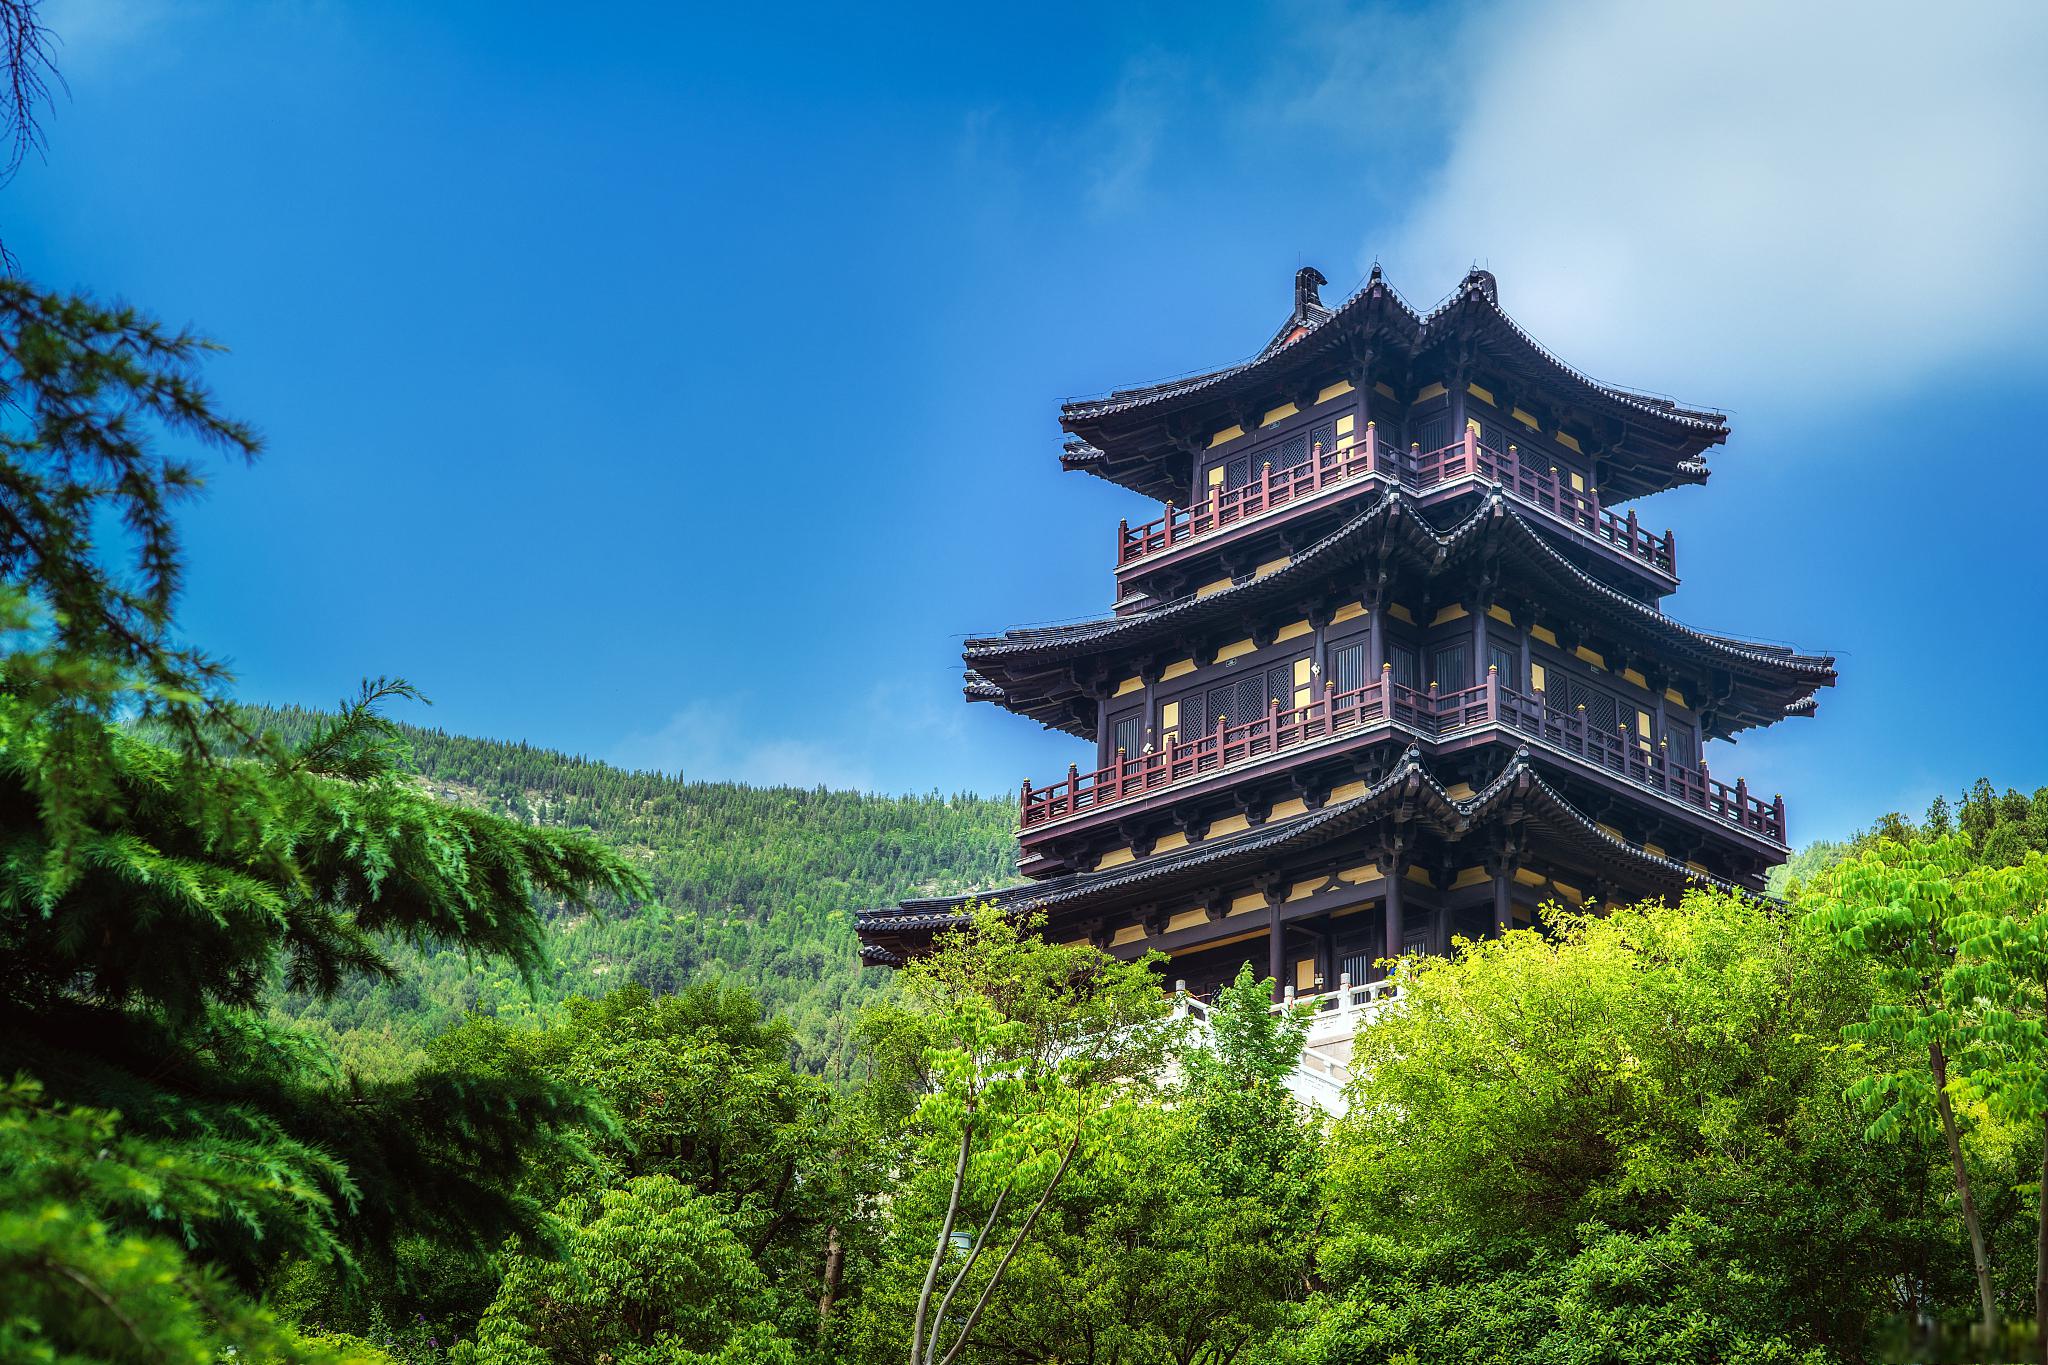 江苏徐州的5个著名建筑 徐州,位于江苏省北部,因其悠久的历史和独特的